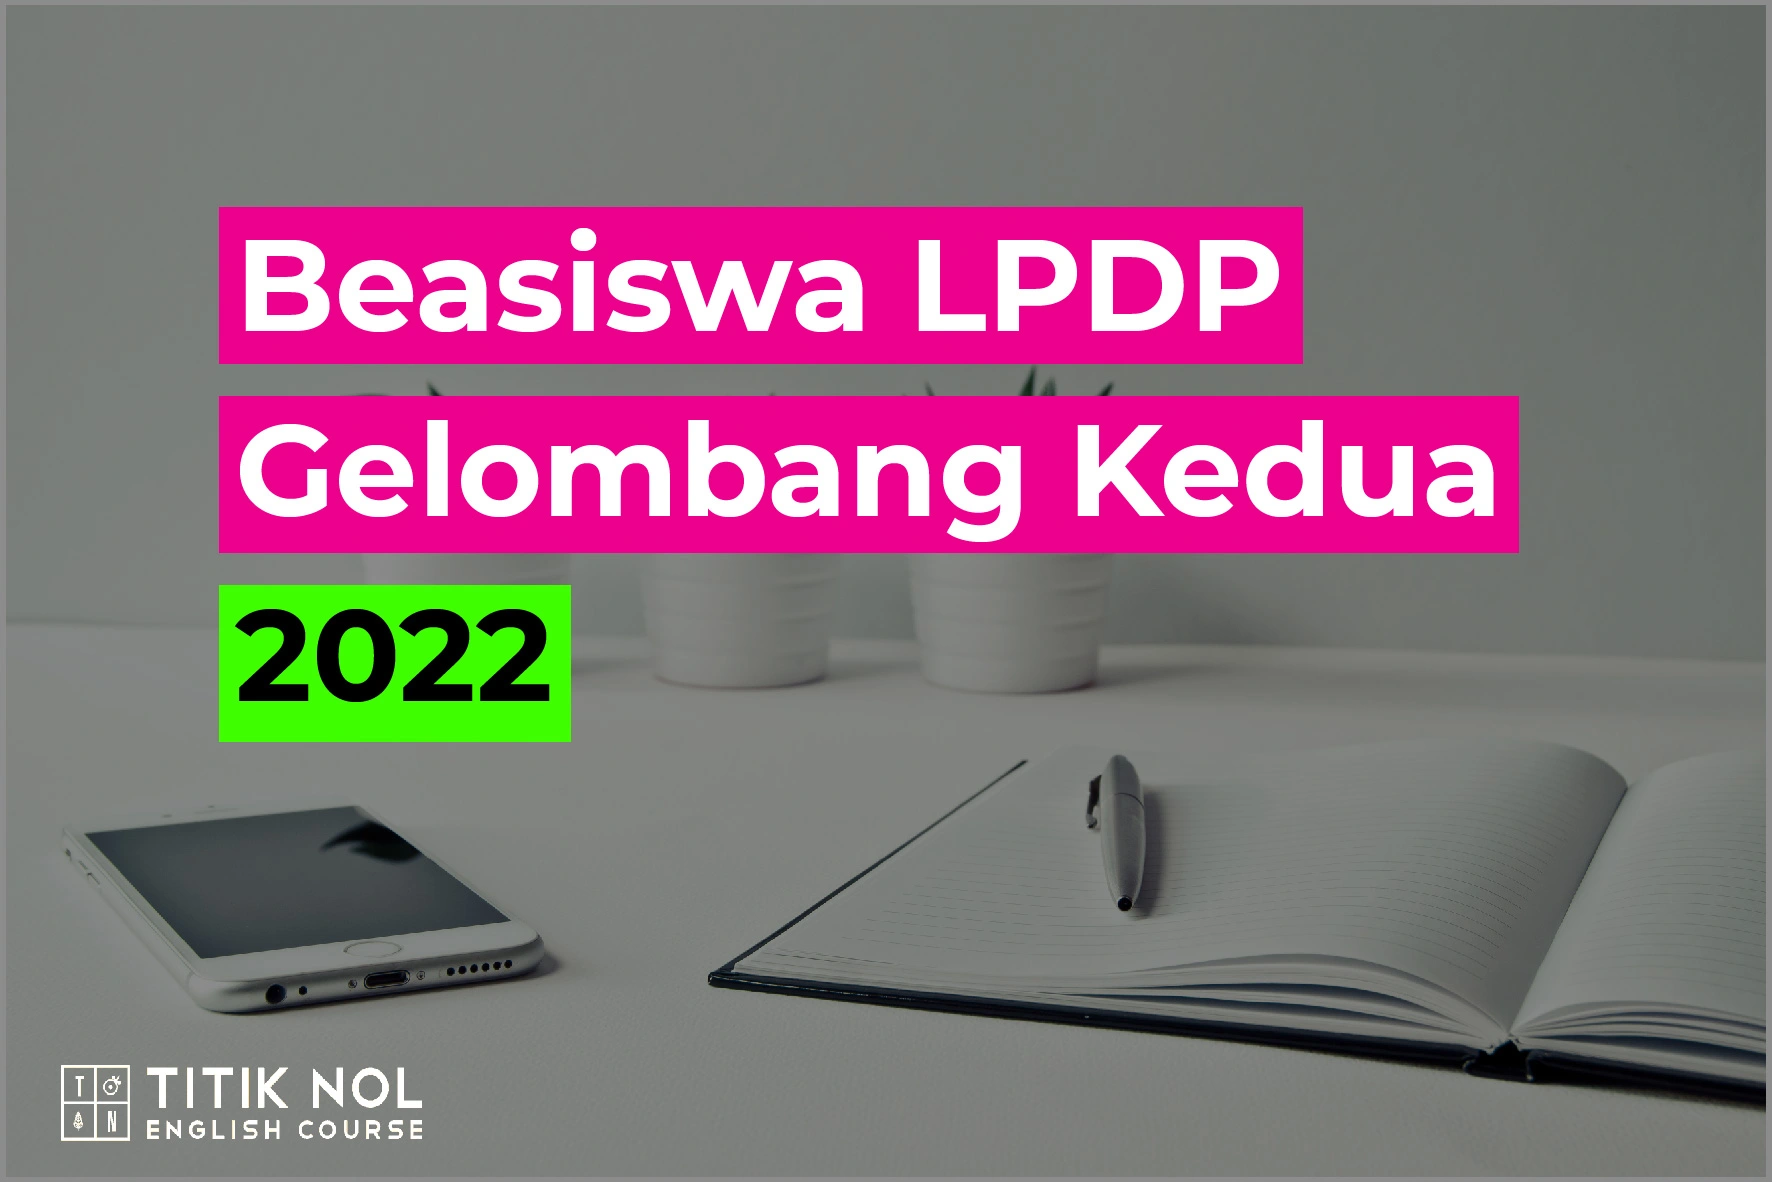 Beasiswa-LPDP-Gelombang-Kedua-2022